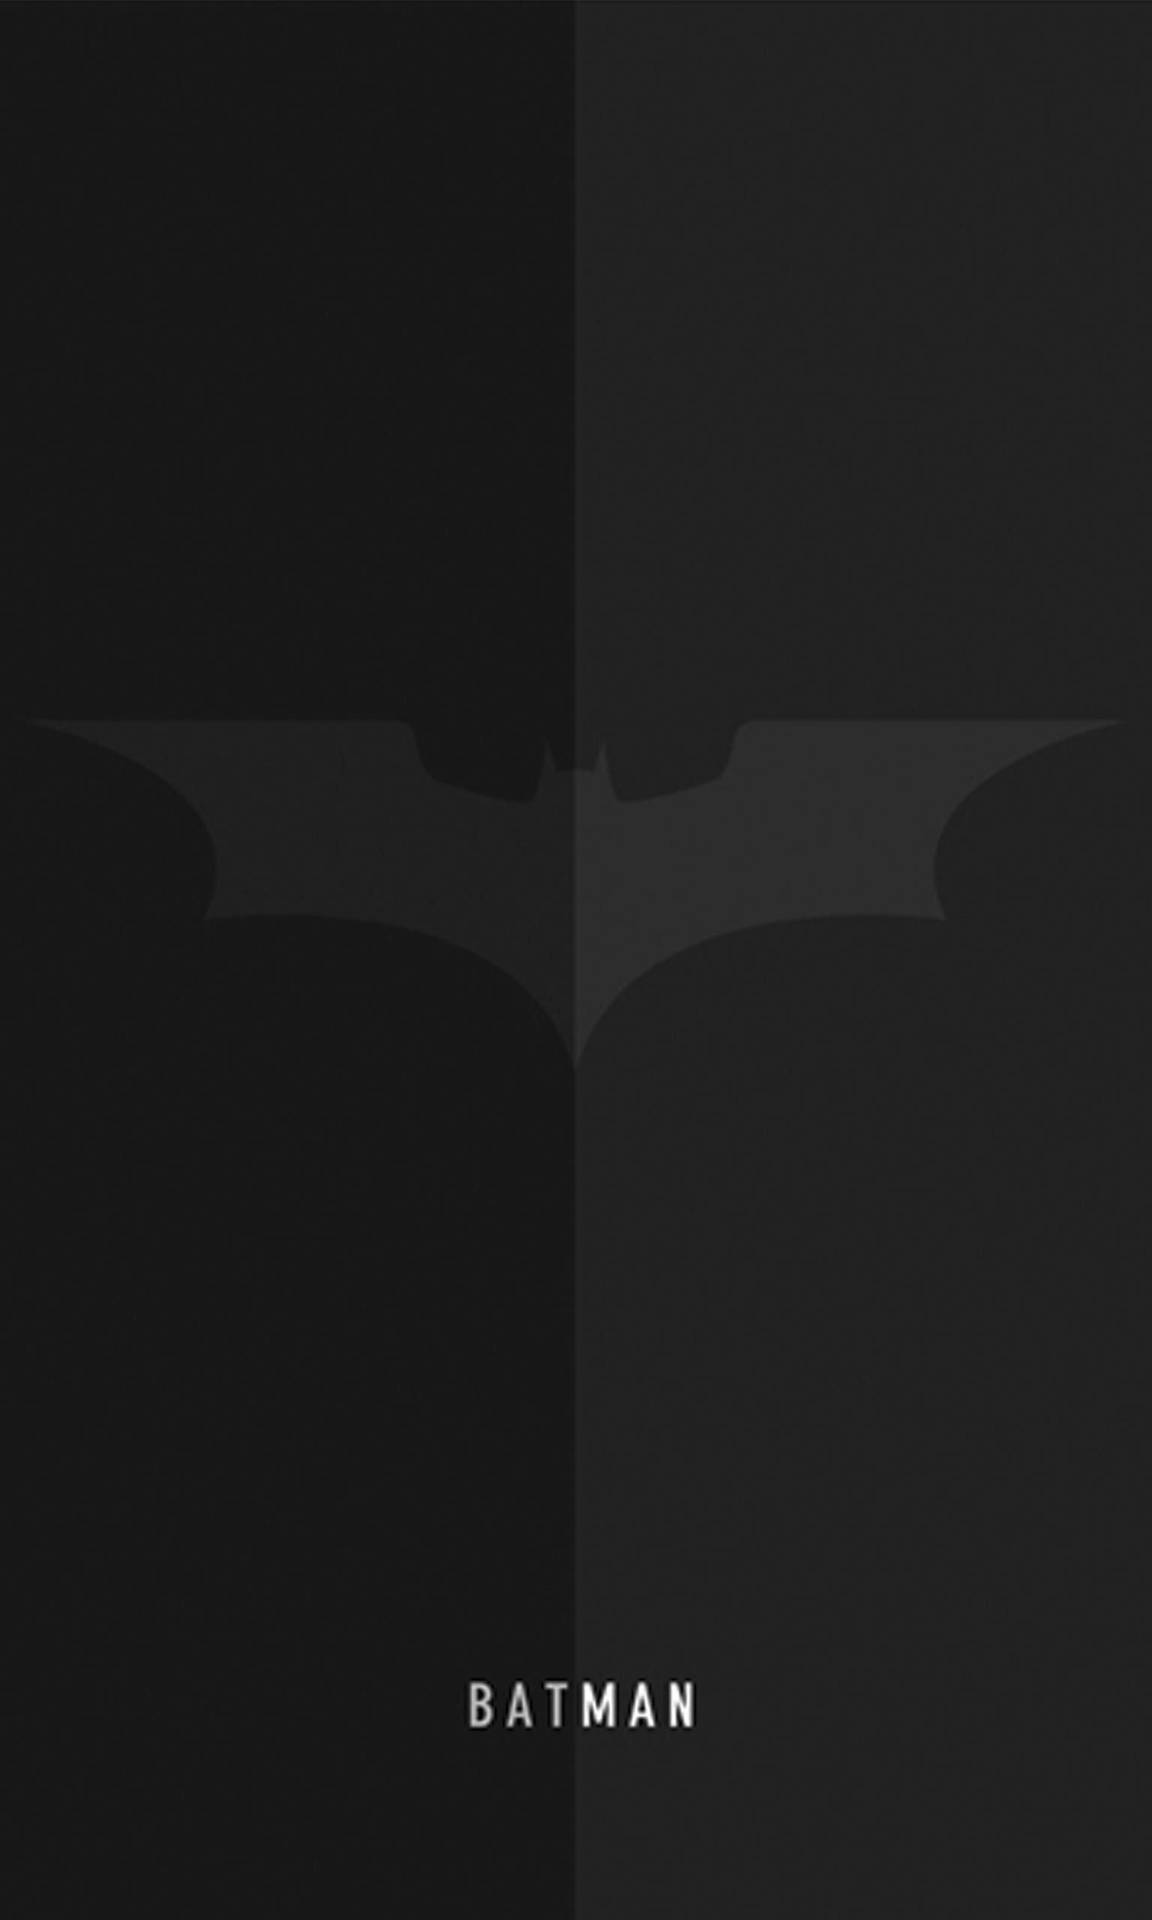 Logotipodo Batman Cinza E Preto Absoluto. Papel de Parede